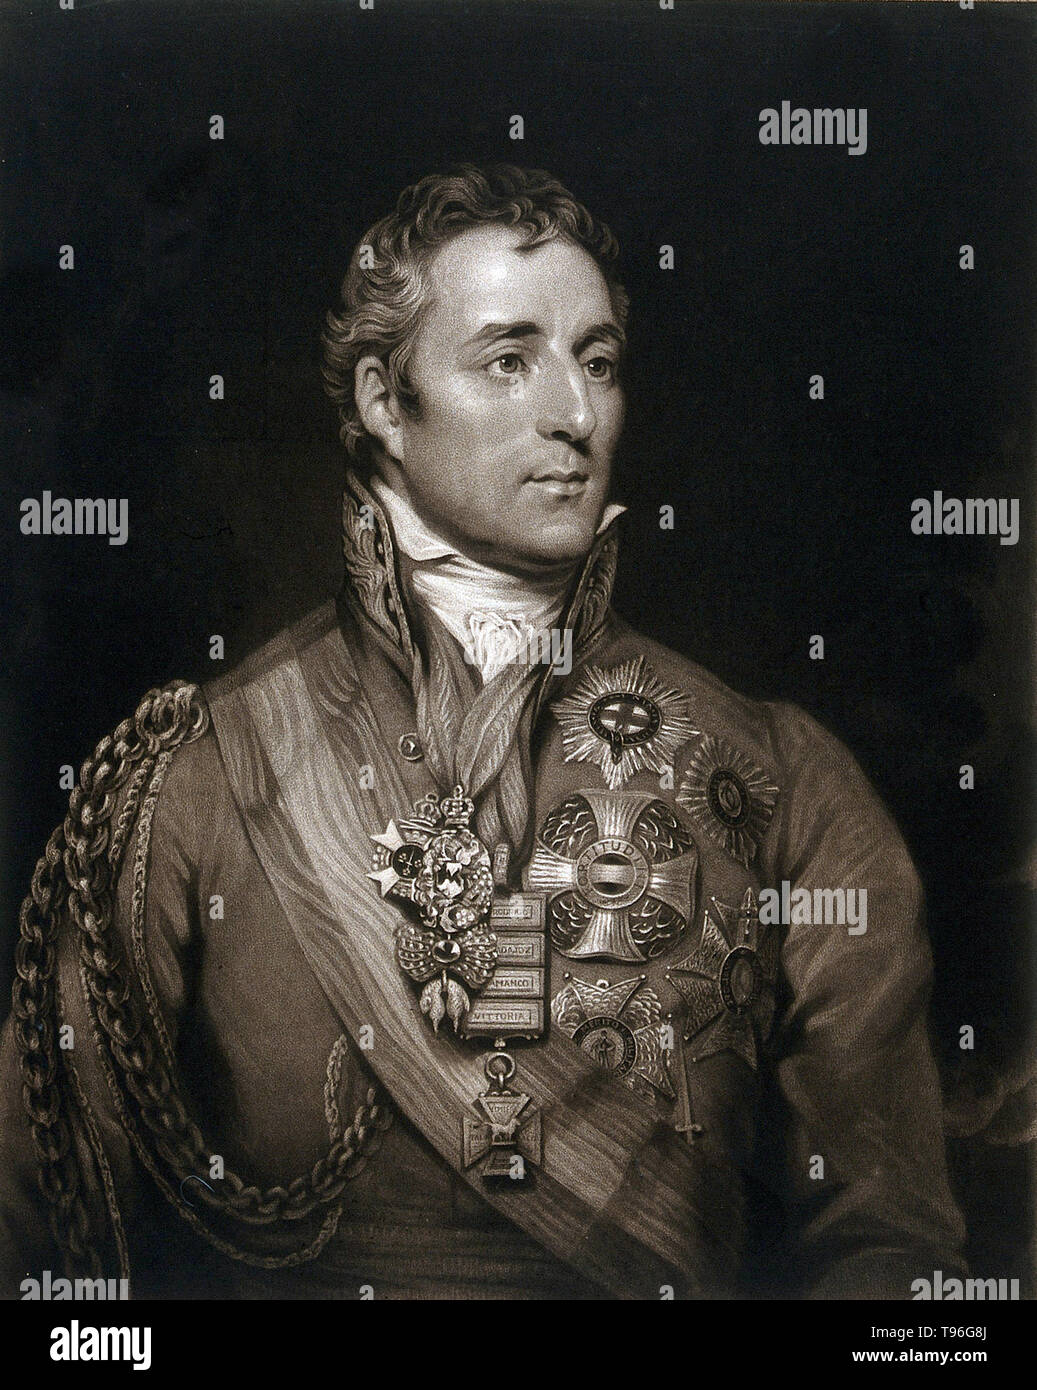 Arthur Wellesley, 1er duc de Wellington (1 mai 1769 - 14 septembre 1852), était un soldat et homme d'anglo-irlandais. Wellesley a pris de l'importance d'une manière générale pendant la campagne péninsulaire des guerres napoléoniennes, et a été promu au grade de maréchal de camp après avoir dirigé les forces alliées à la victoire contre l'Empire français à la Bataille de Vitoria en 1813. Après l'exil de Napoléon en 1814, il a servi comme ambassadeur en France et a obtenu un duché. Banque D'Images